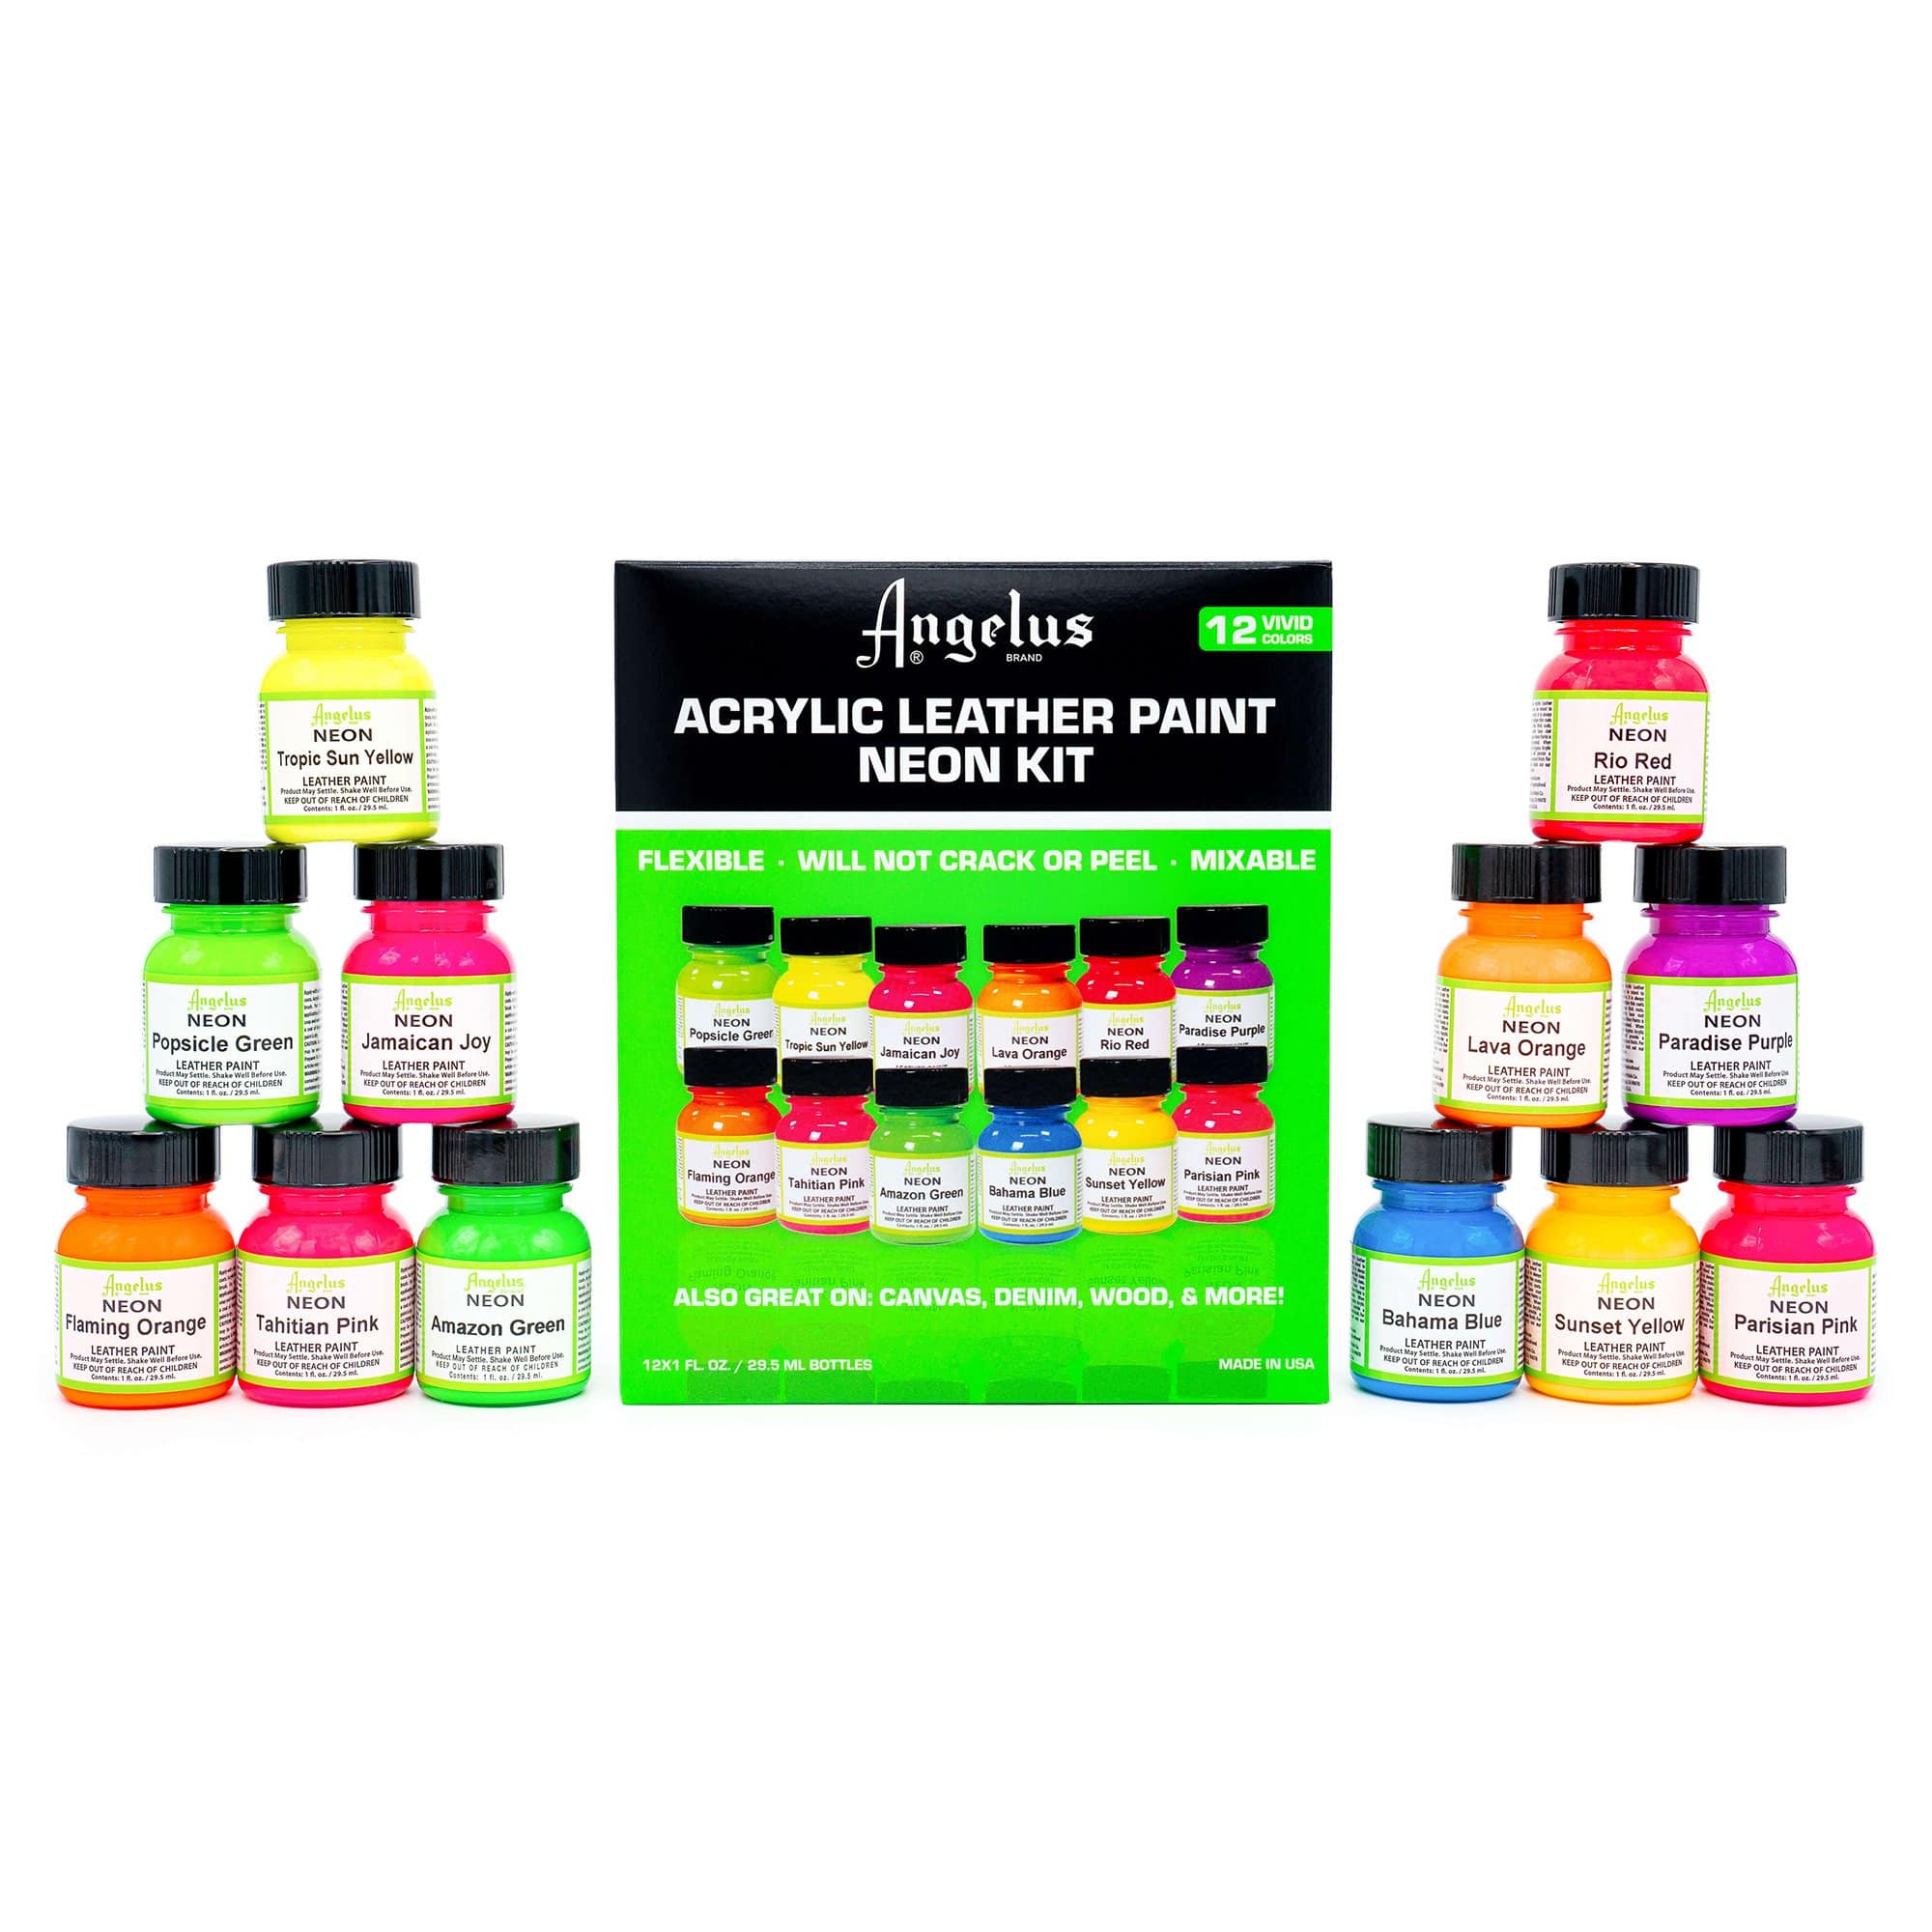 12 Color Suede Dye Assortment Kit